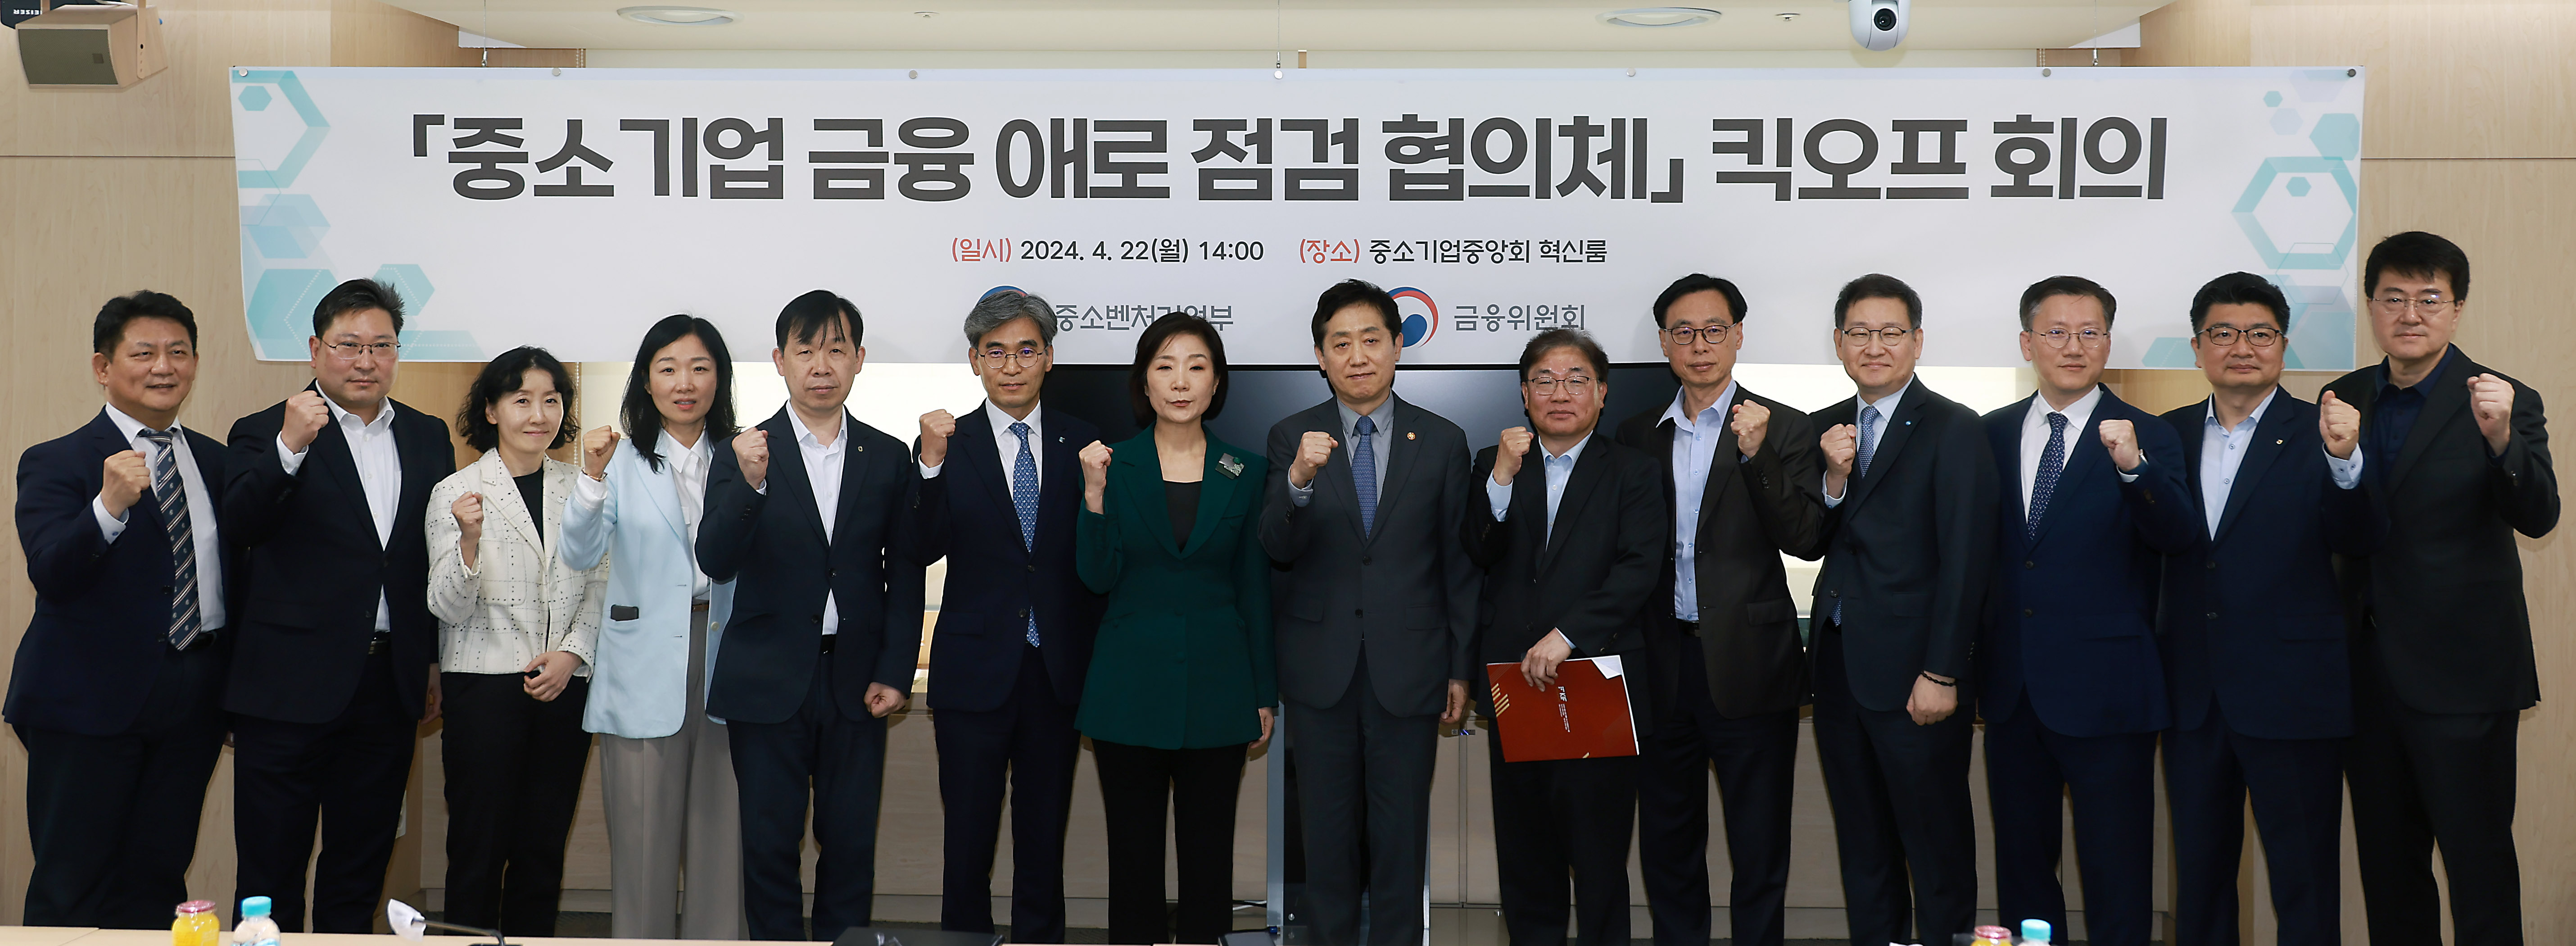 중소기업 금융 애로점검 협의체 1차 회의 개최3